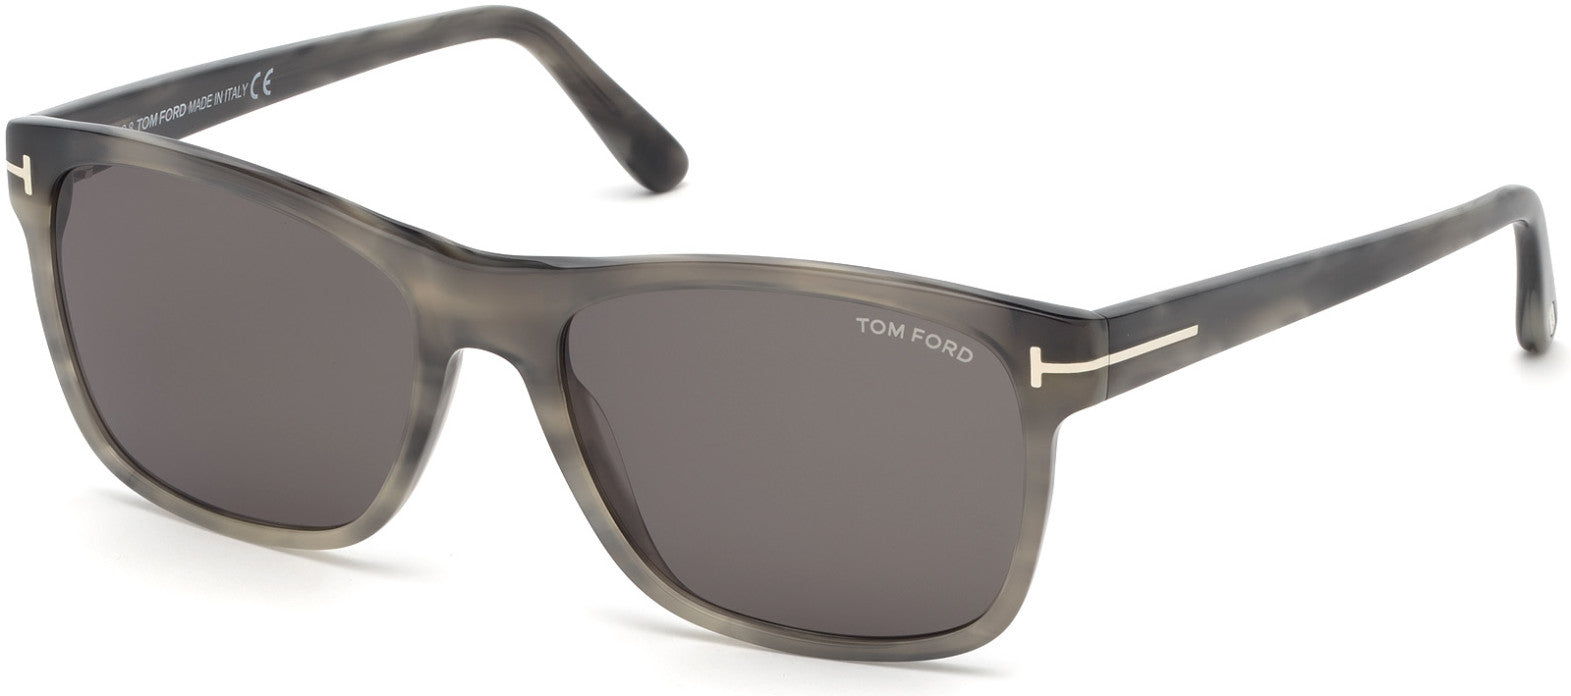 Tom Ford FT0698 Giulio Geometric Sunglasses 47N-47N - Shiny Mixed Grey Havana/ Green Lenses